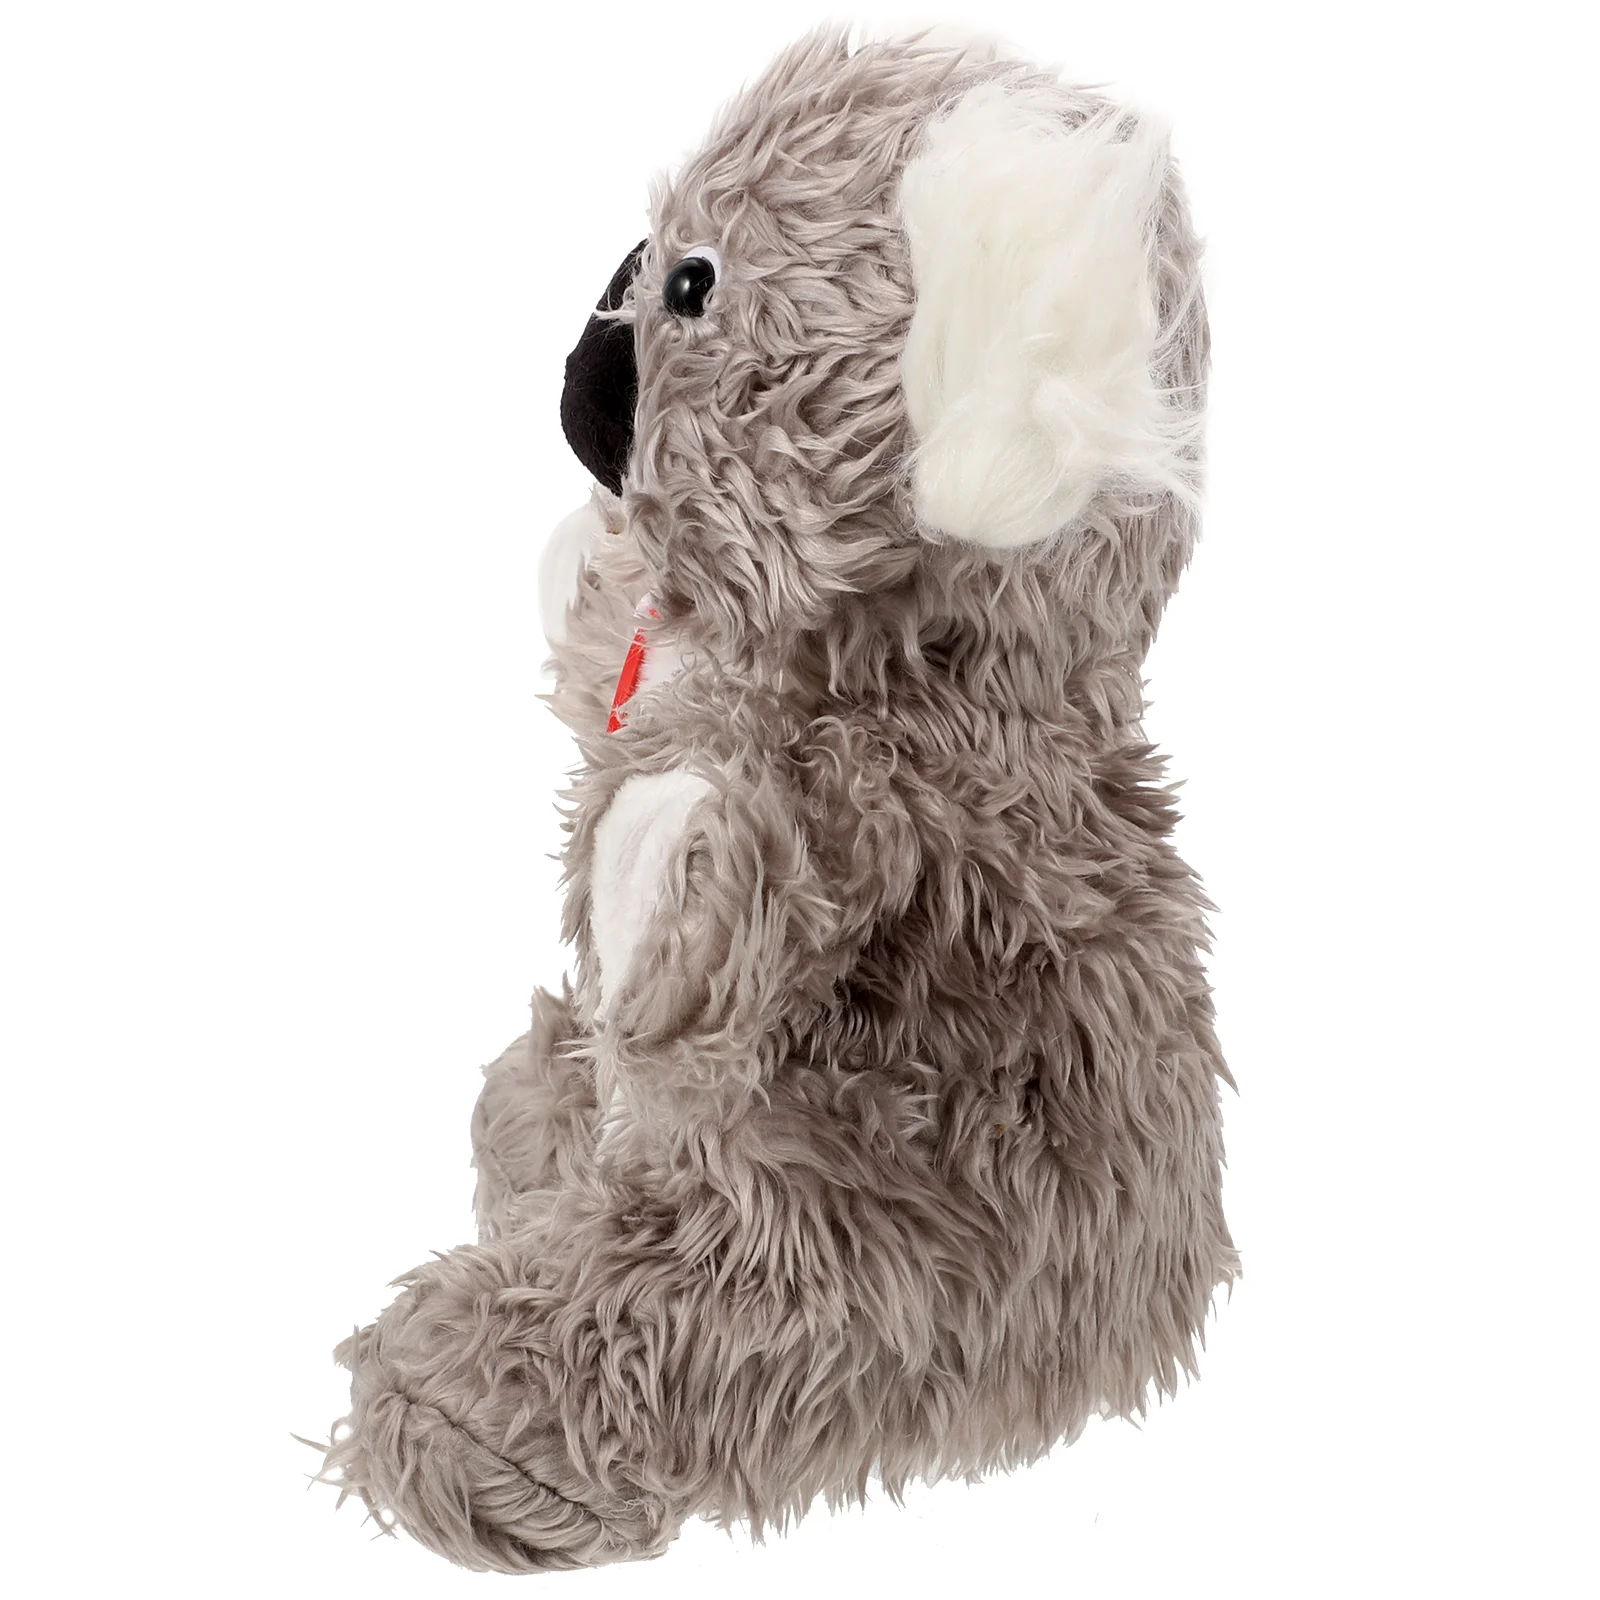 

Ручная кукла Koala, детские куклы, подвижная головоломка с ртом, игрушки для шоу, театра, реалистичные развивающие животные на весь тело, креативные